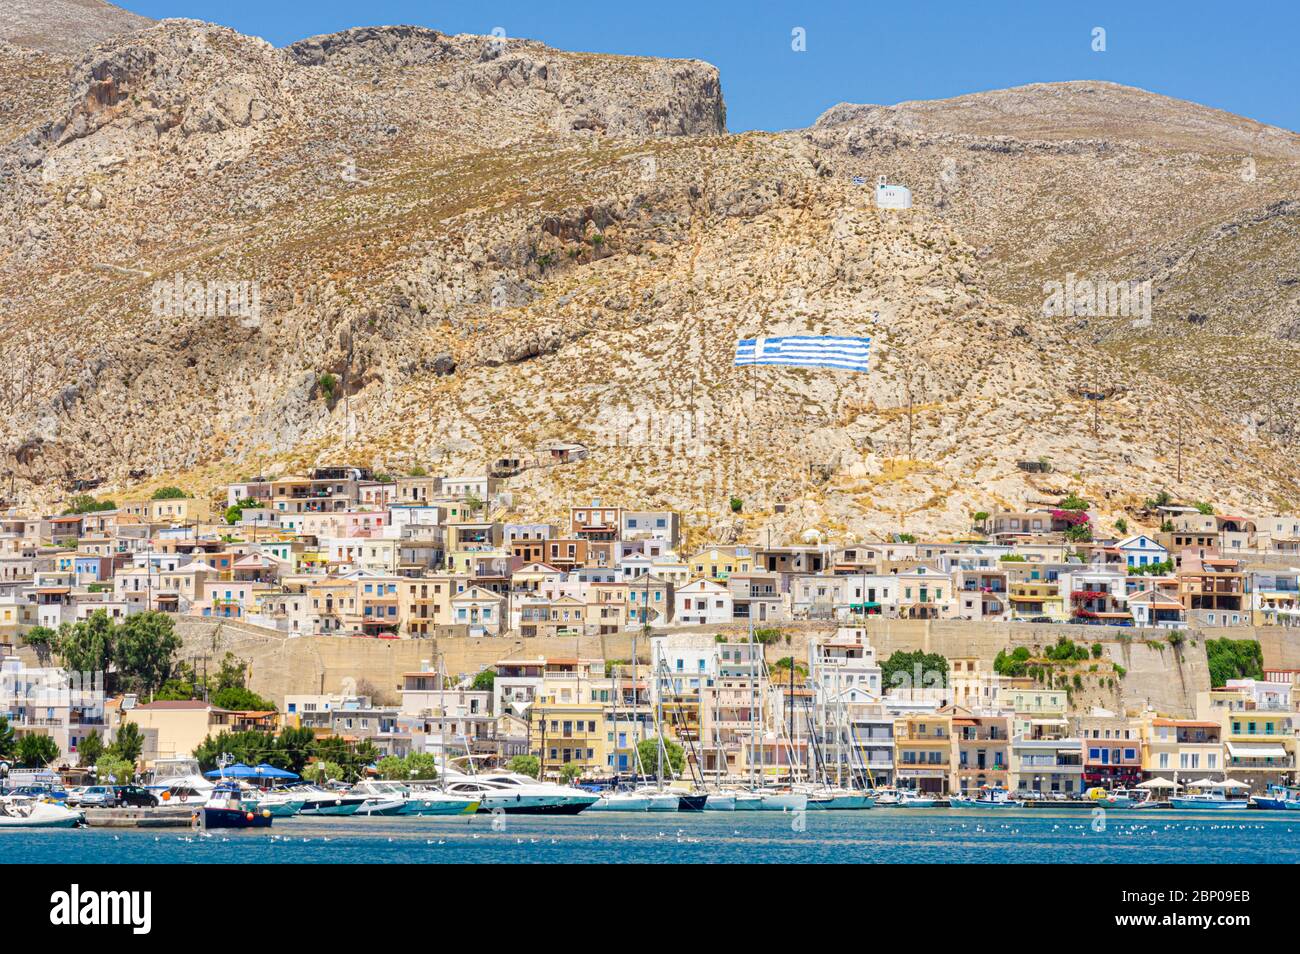 Pothia Town on the Dodecanese Island of Kalymnos, Greece Stock Photo